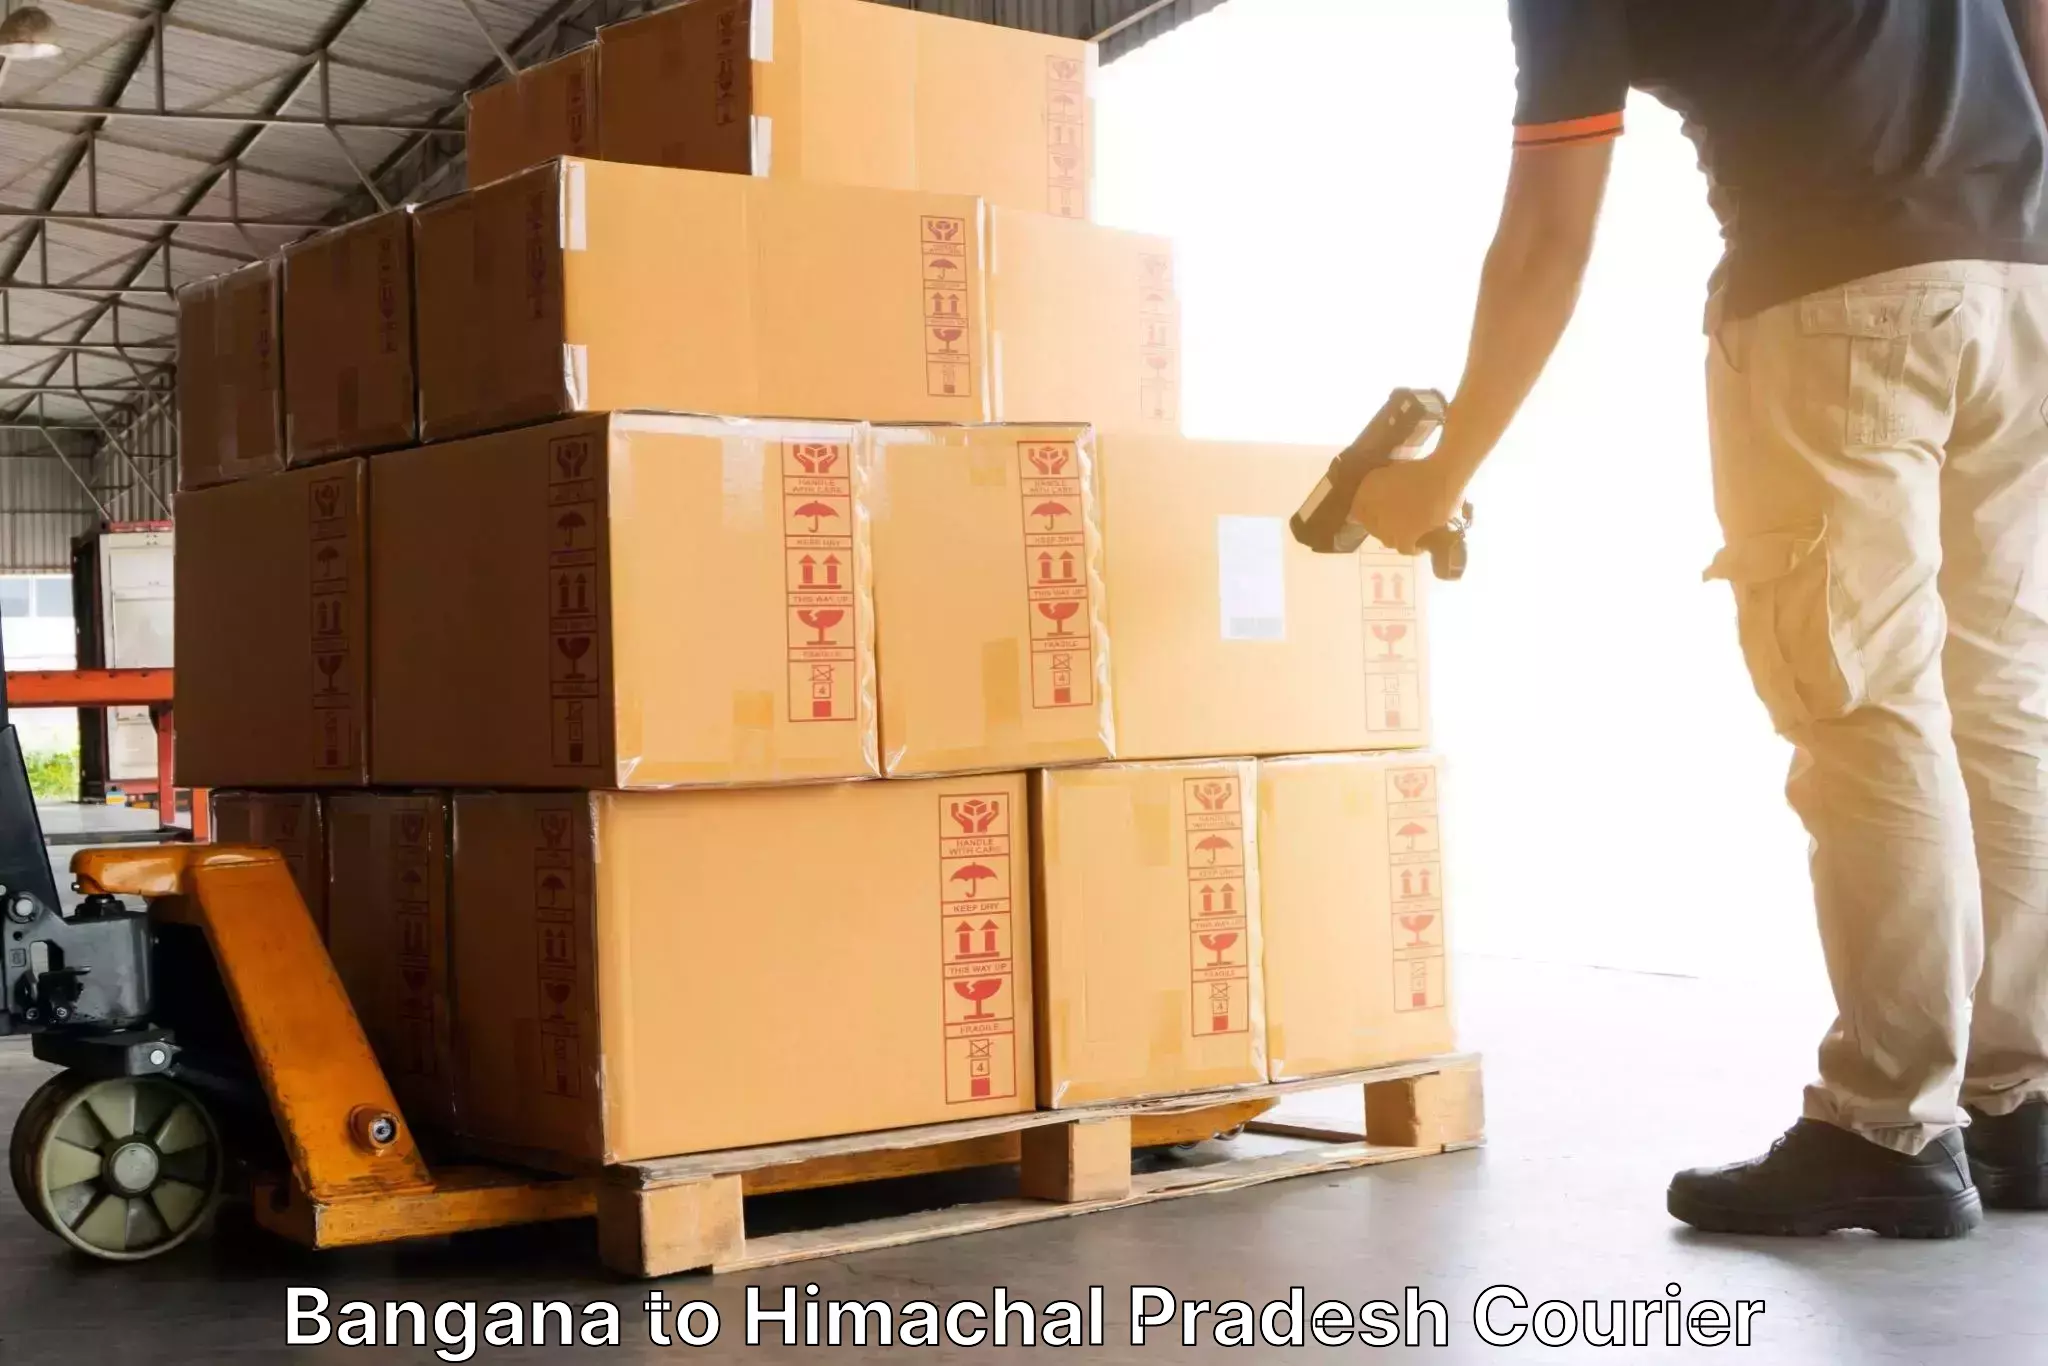 Tech-enabled shipping Bangana to Una Himachal Pradesh